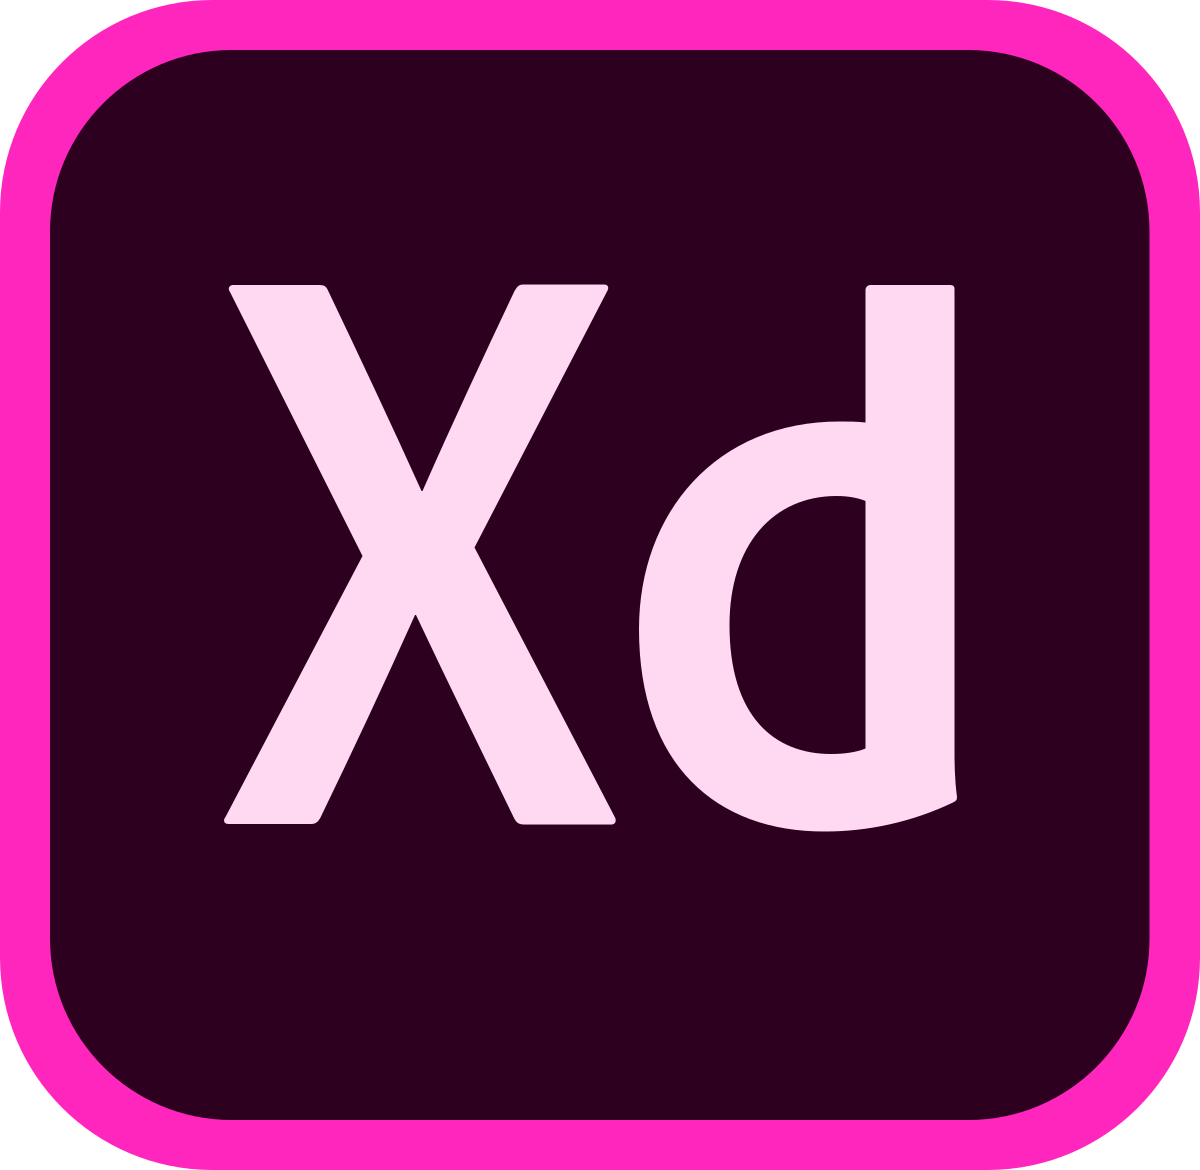 آموزش Adobe XD